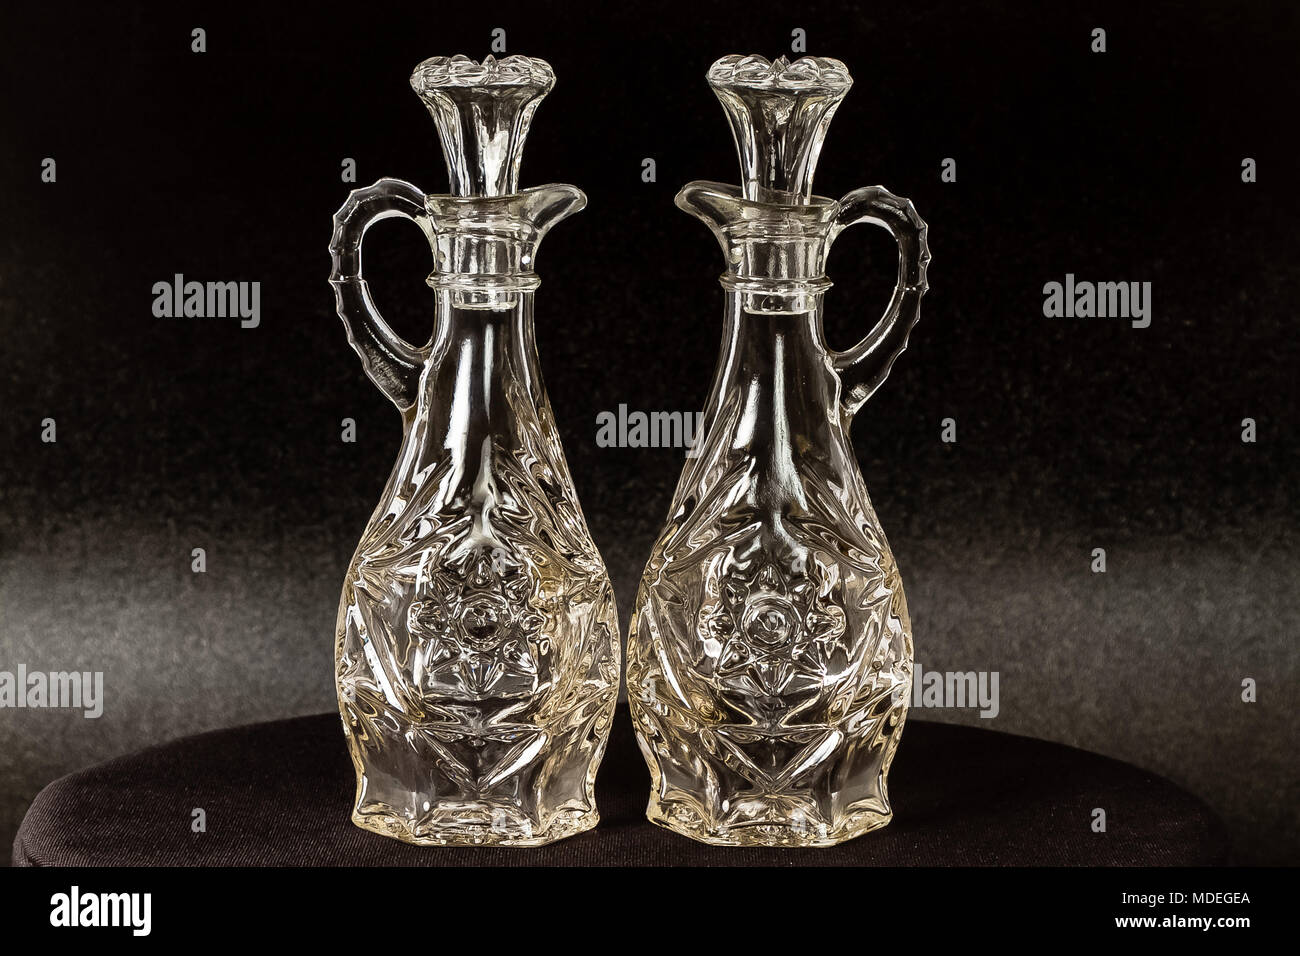 Dos jarras de vidrio utilizado para diversos líquidos Foto de stock